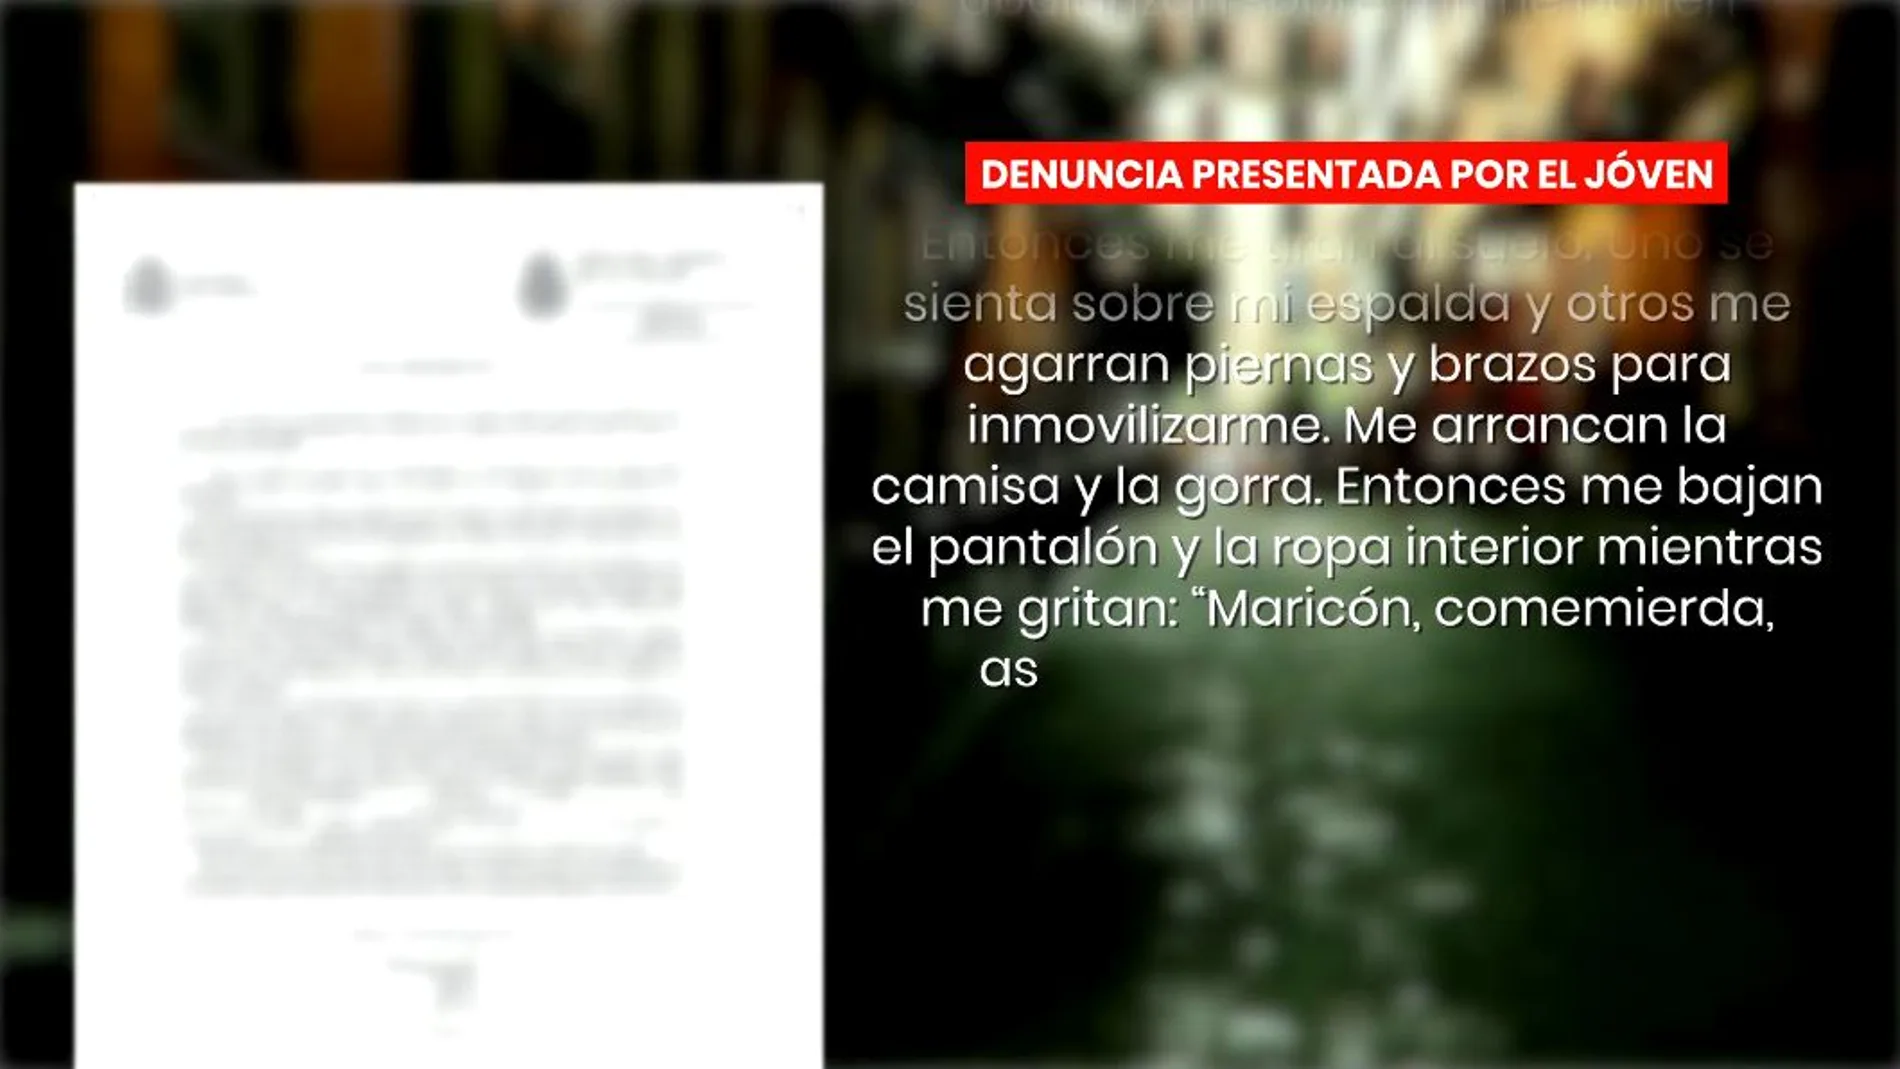 Denuncia de la supuesta agresión homófoba en Madrid.